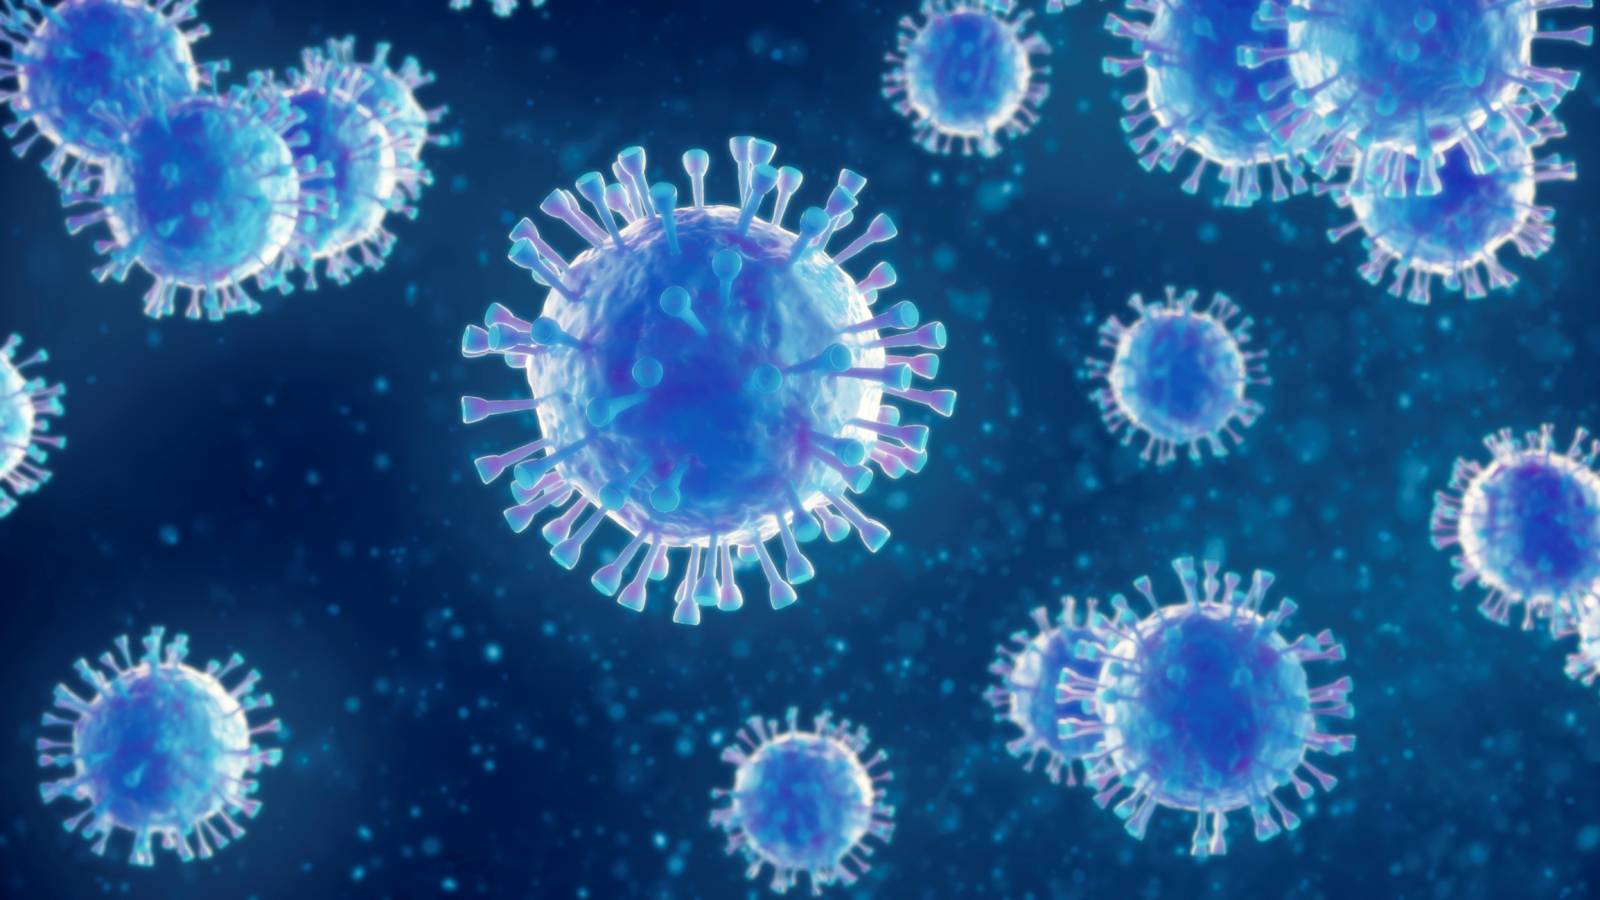 Informatie over Coronavirus Roemenië op de avond van 4 maart